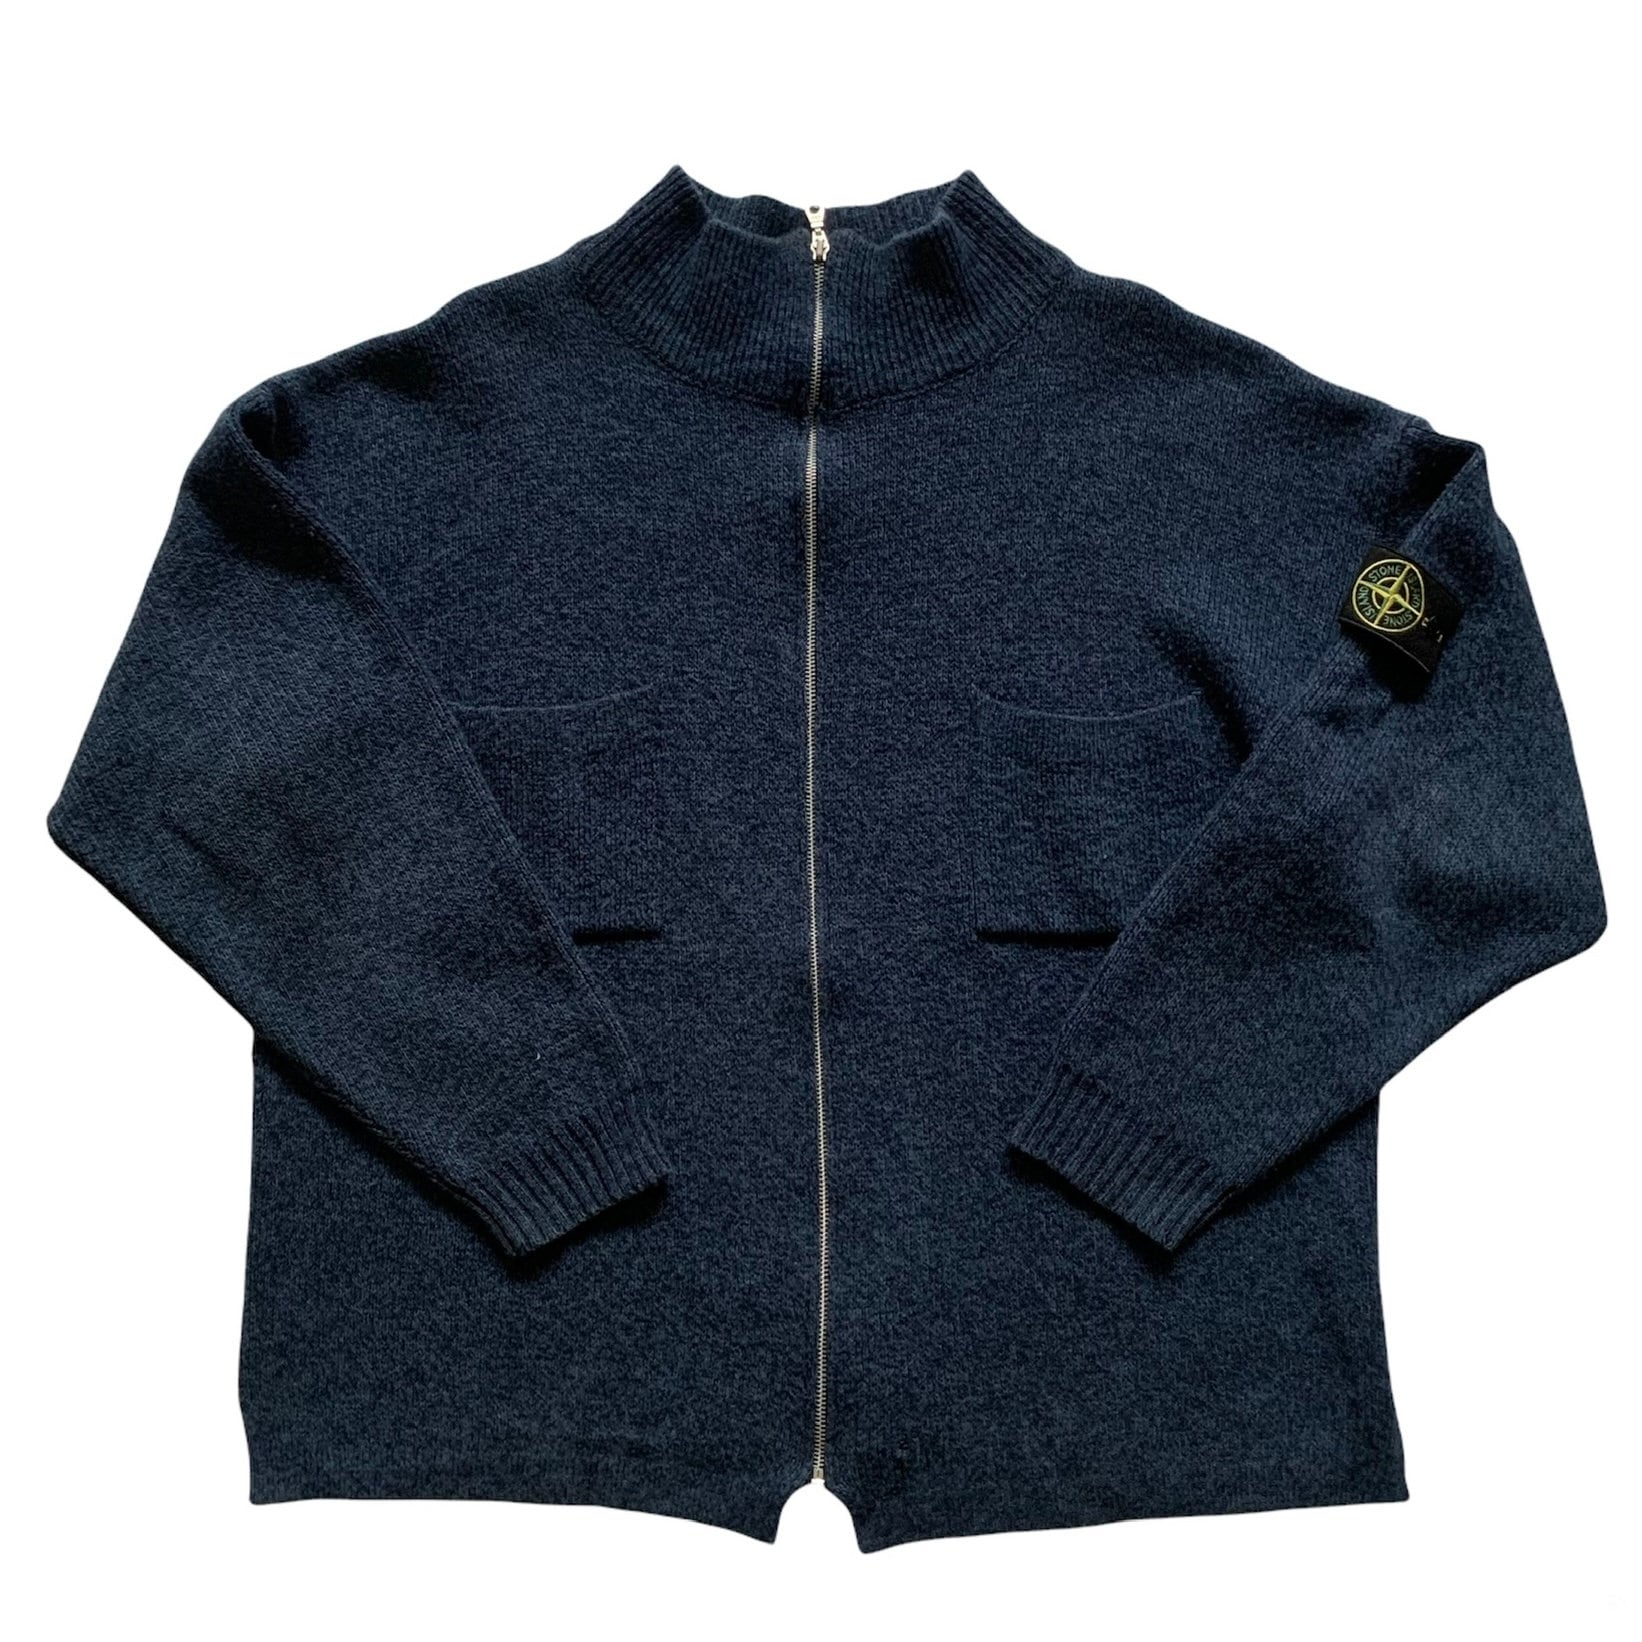 Vintage Stone Island Blau Baumwolle Zip Up Pullover Made in Italy Herren Größe Xxl 2Xl von VintageMensGoods